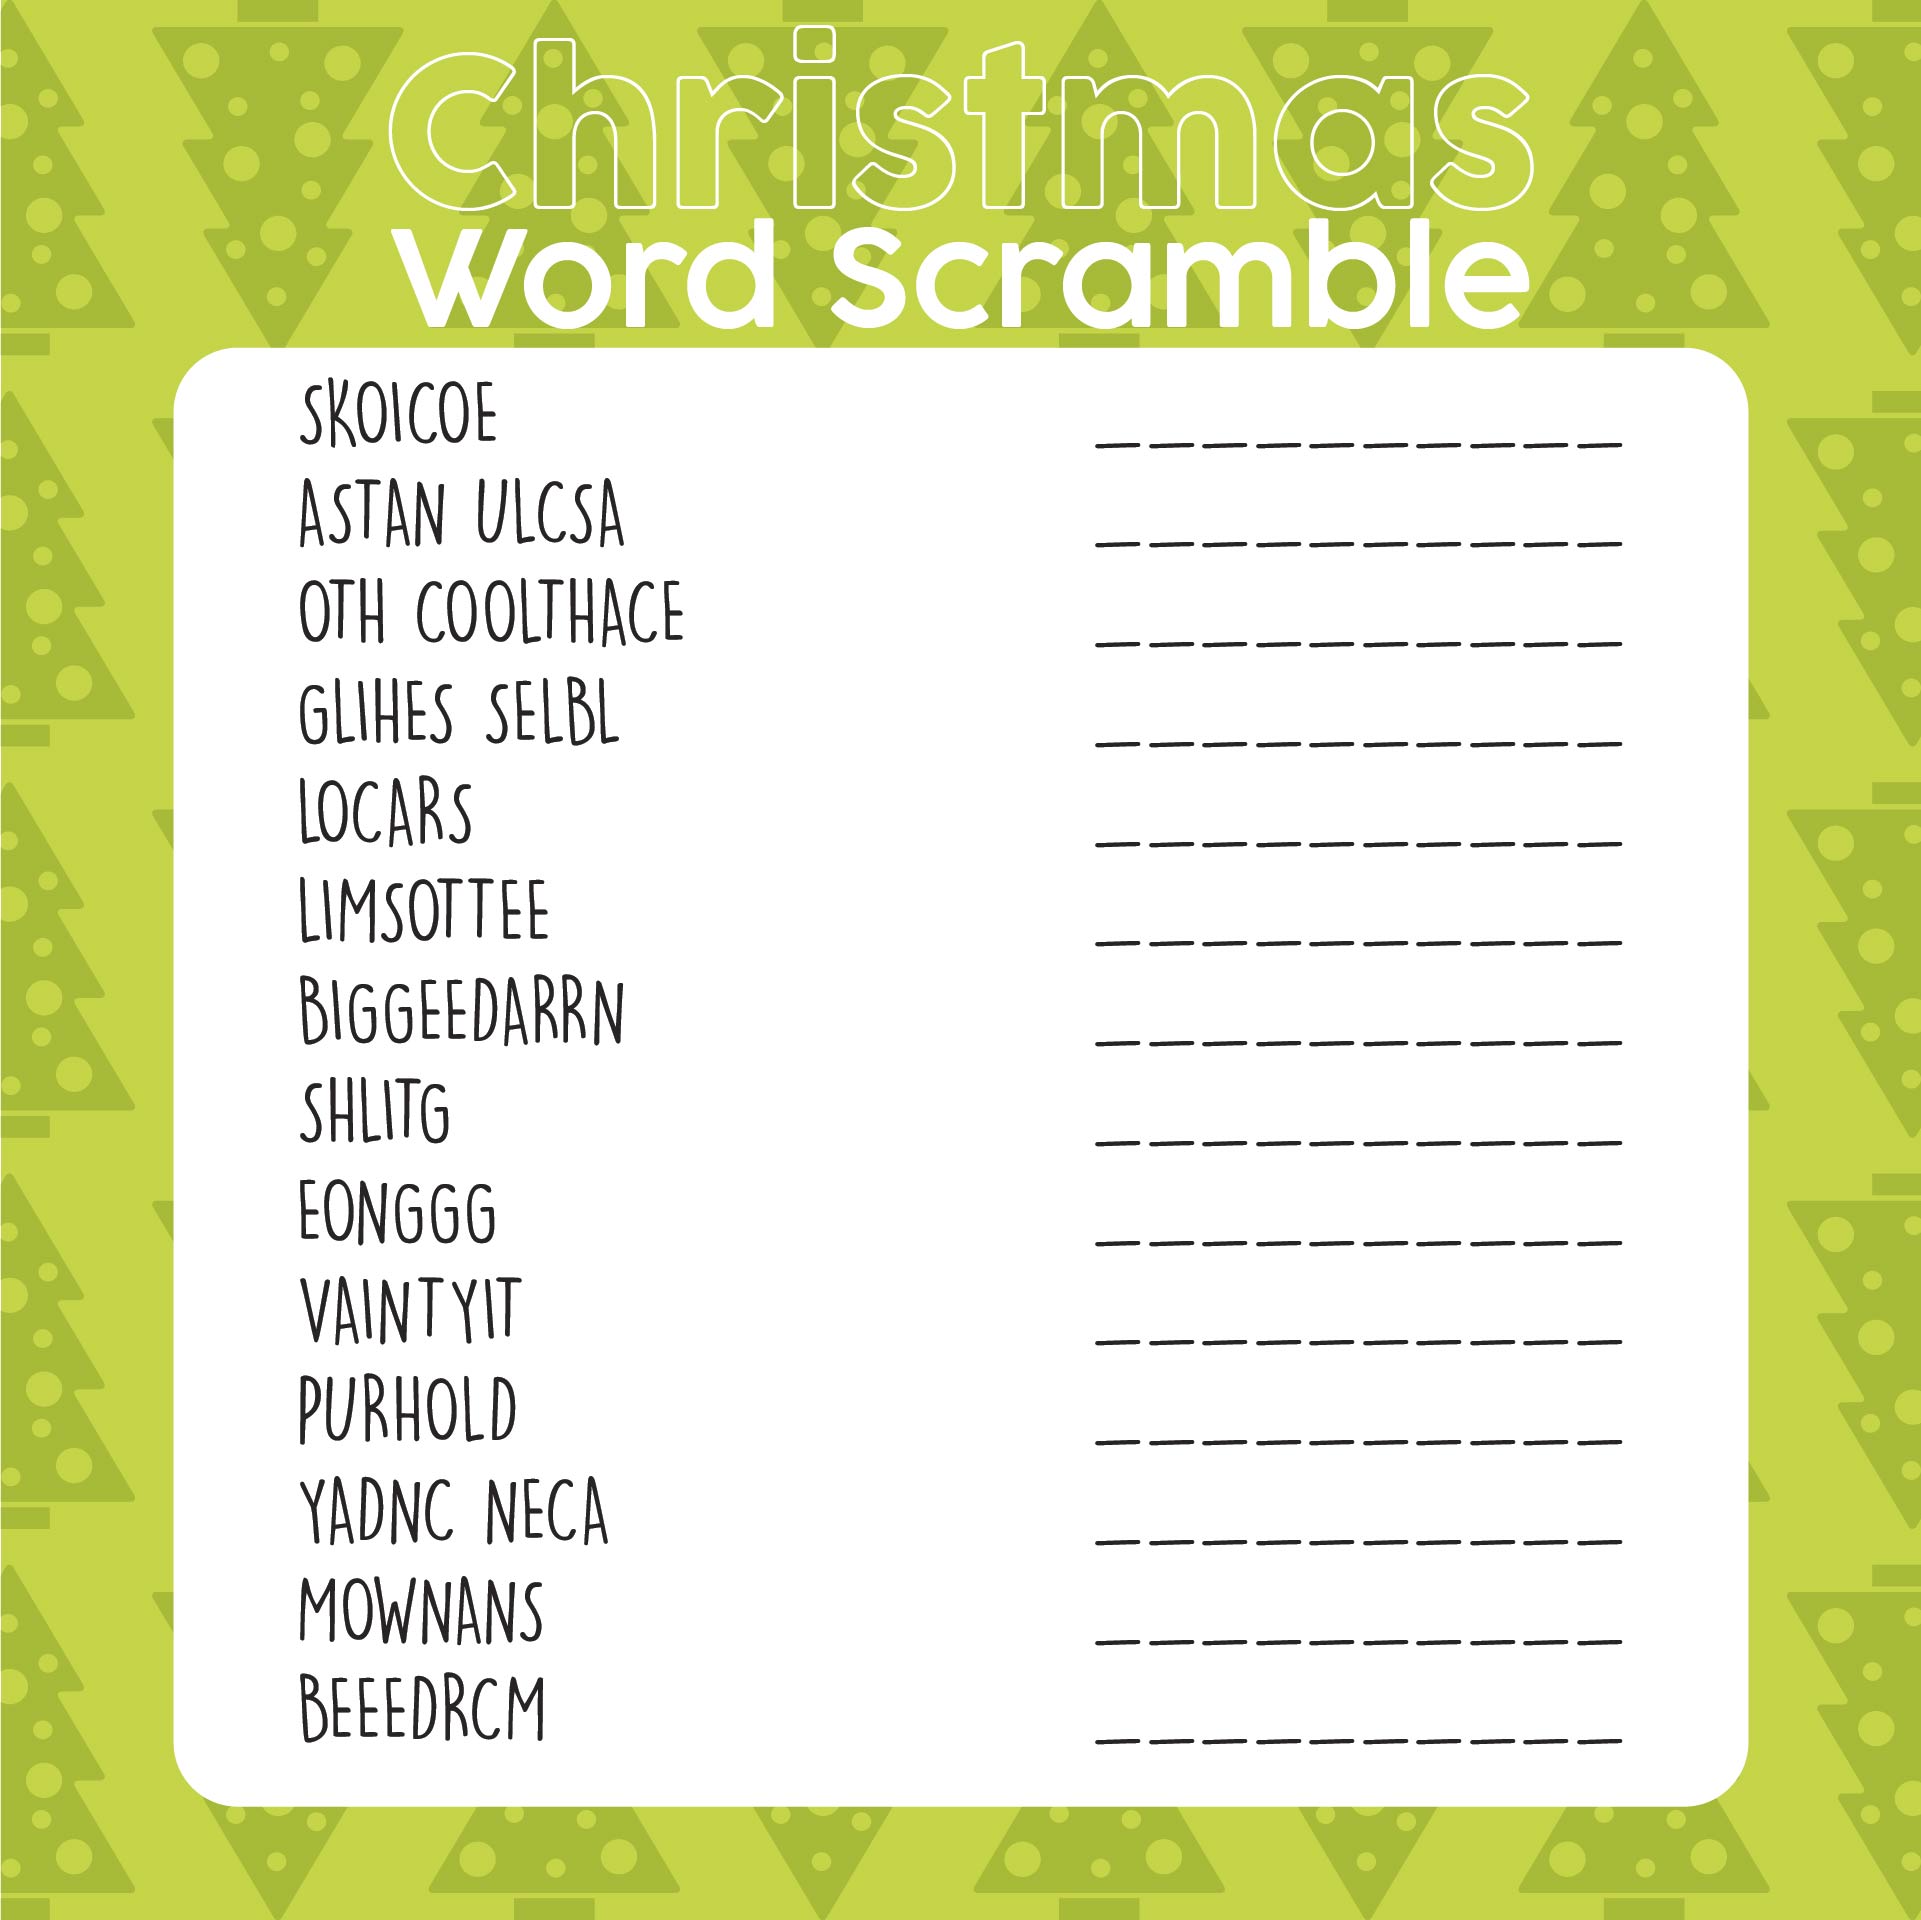 Printable Christmas Word Scramble Game